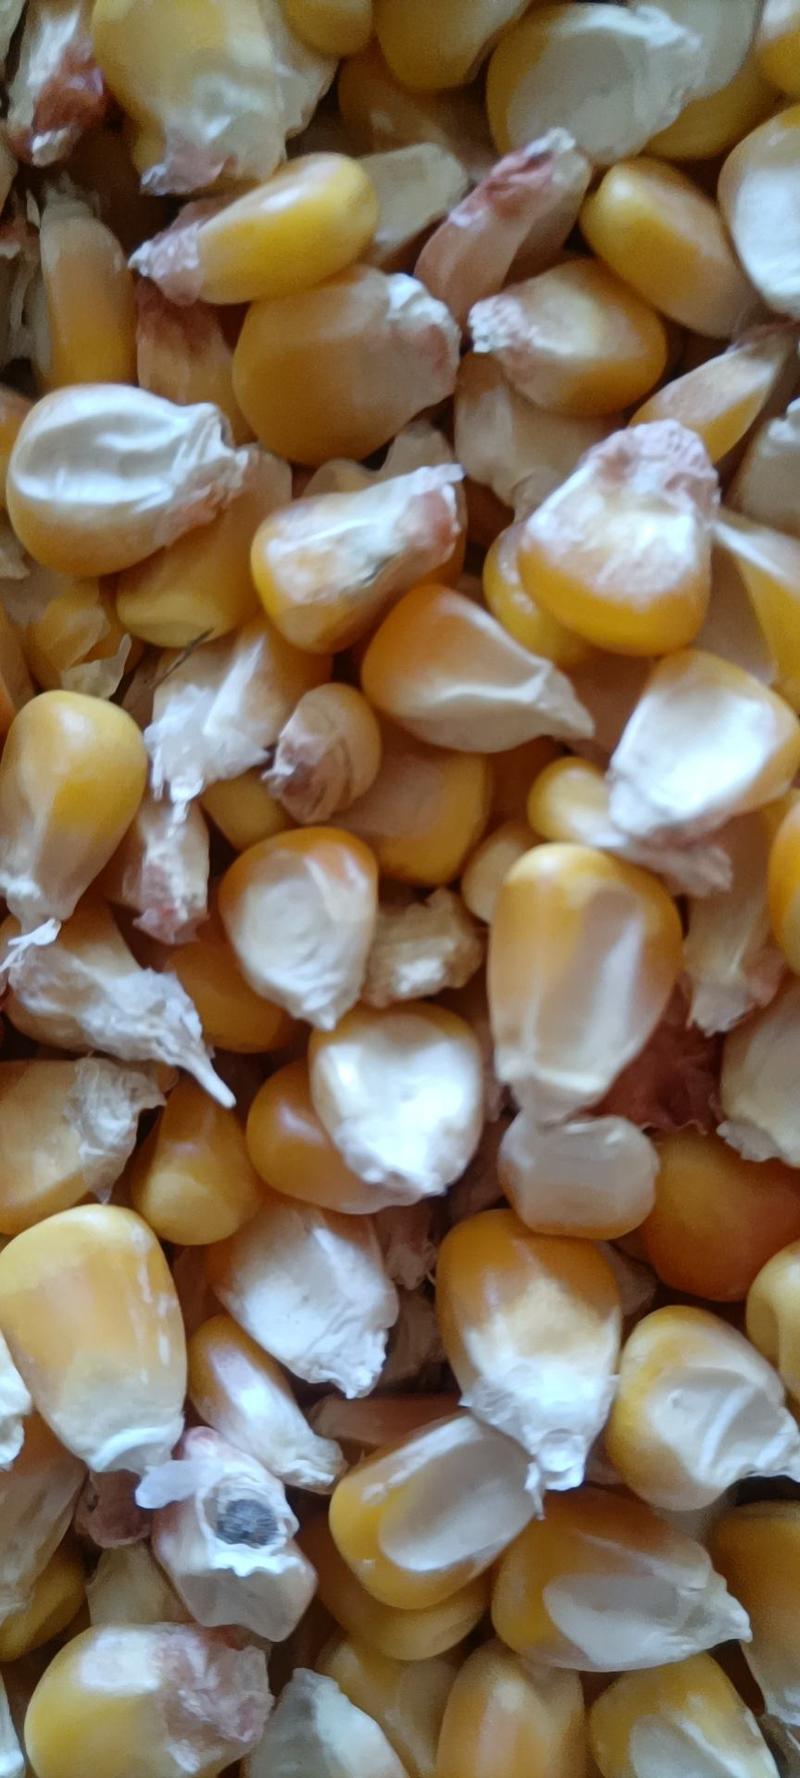 陕西汉中玉米饲料玉米价格优惠质量好欢迎咨询采购